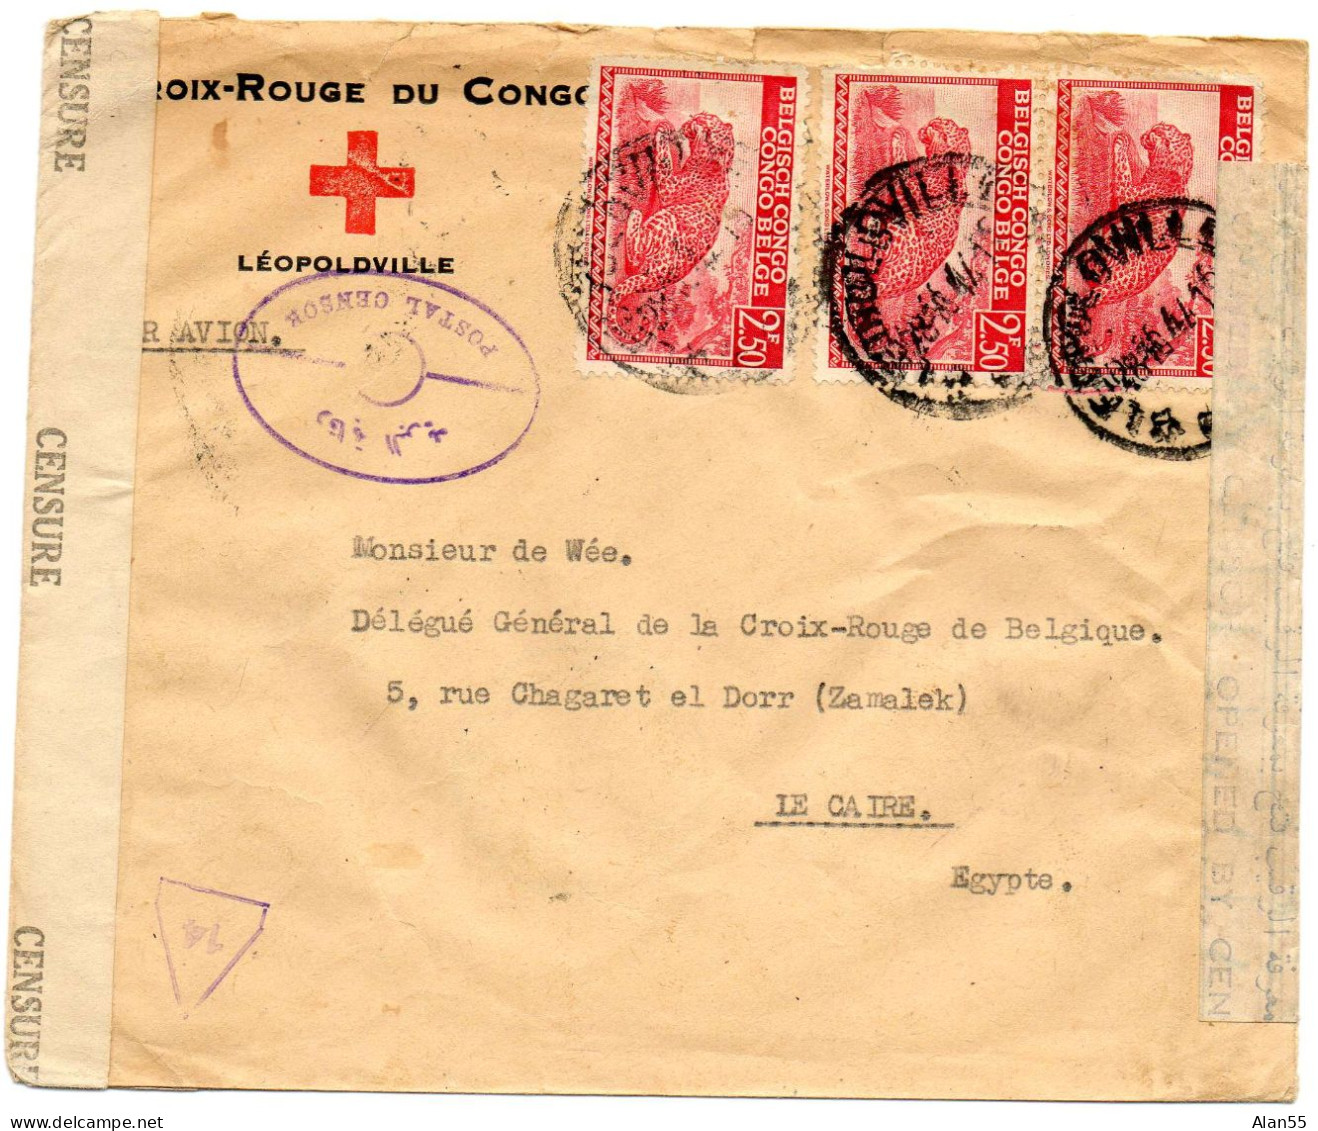 CONGO BELGE. 1944. CROIX-ROUGE DU CONGO A LEOPOLDVILLE POUR CROIX-ROUGE BELGE EN EGYPTE. DOUBLE CENSURE. - Storia Postale